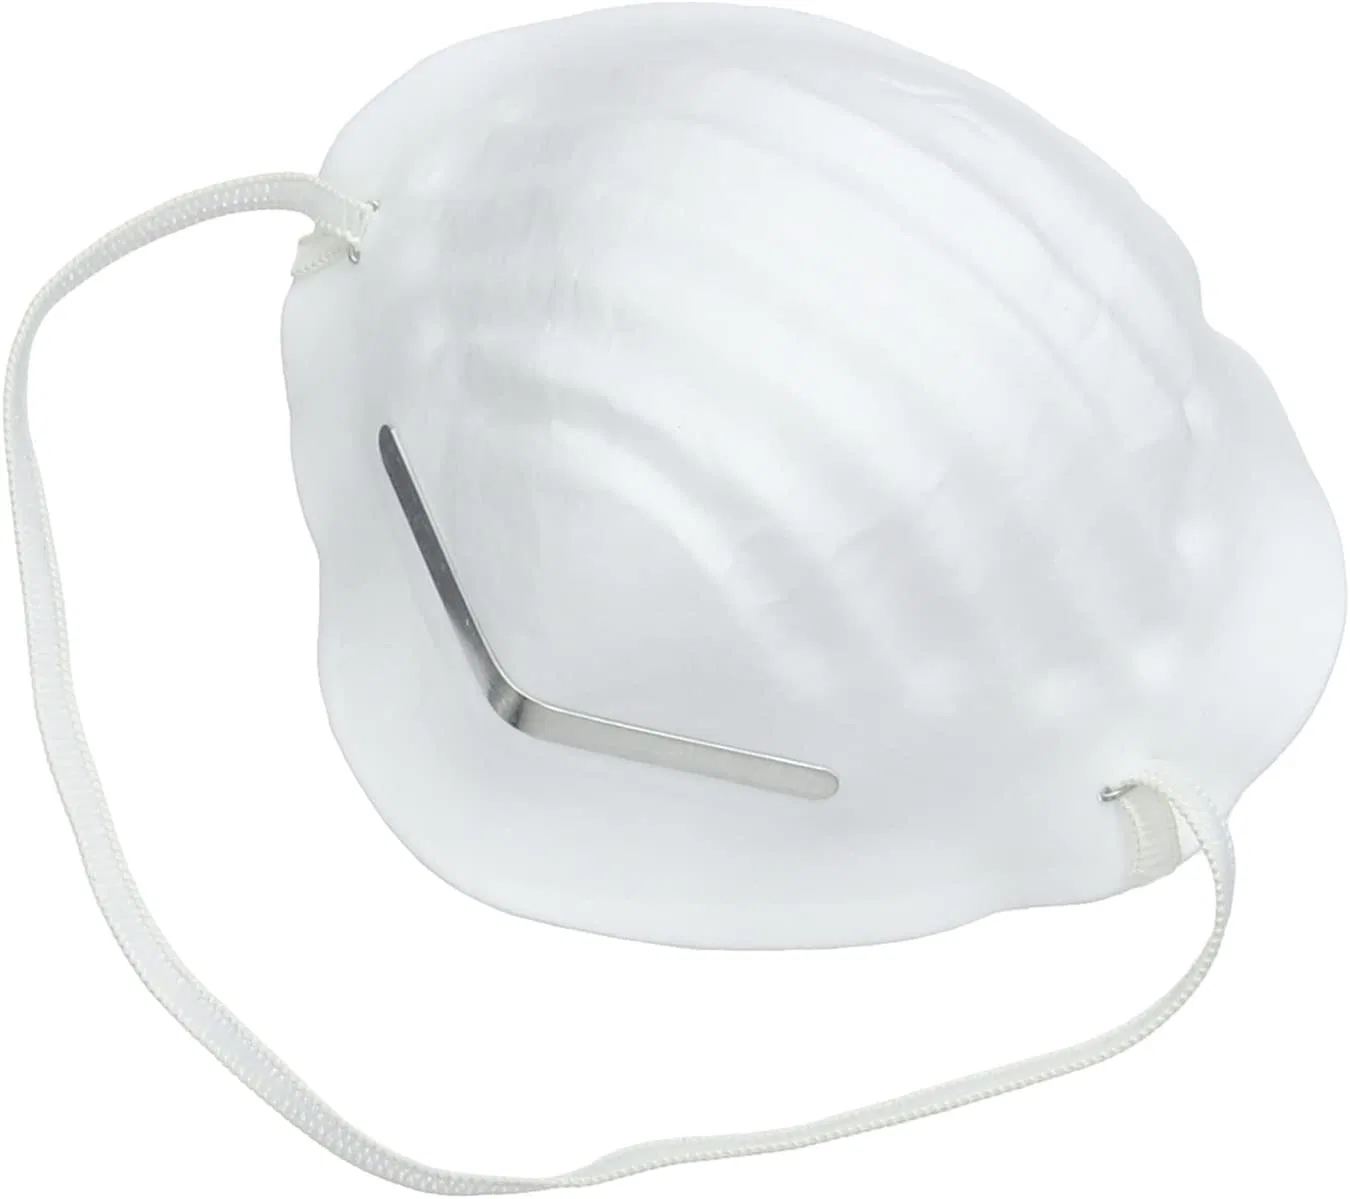 Máscara de polvo blanca no tejida Industrial con Respirador desechable aprobado por CE Máscara facial de protección de seguridad laboral